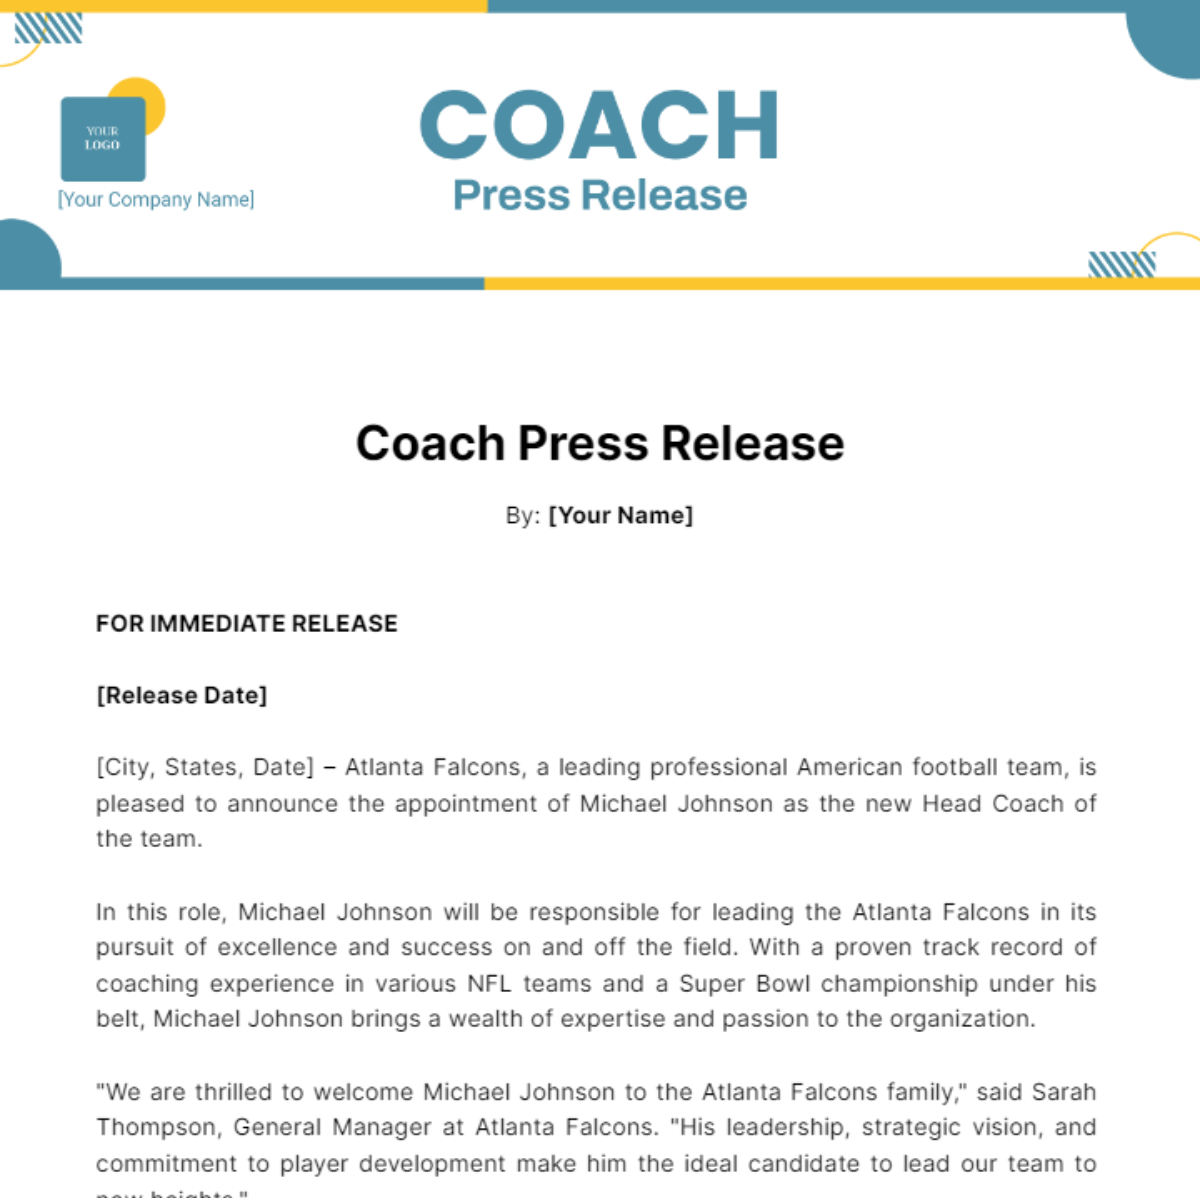 Coach Press Release Template